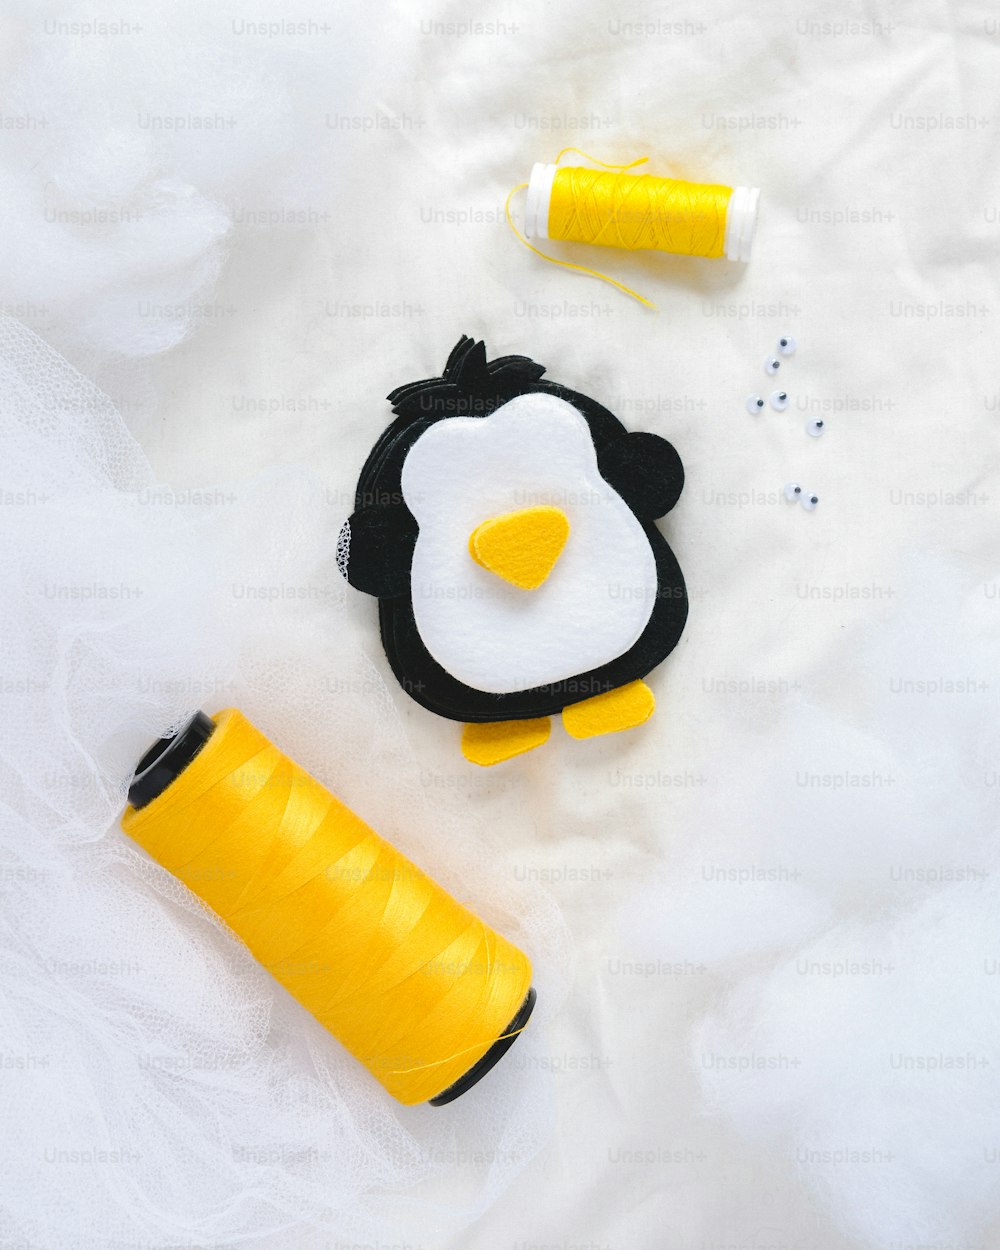 un progetto di cucito con un pinguino e un rocchetto di filo